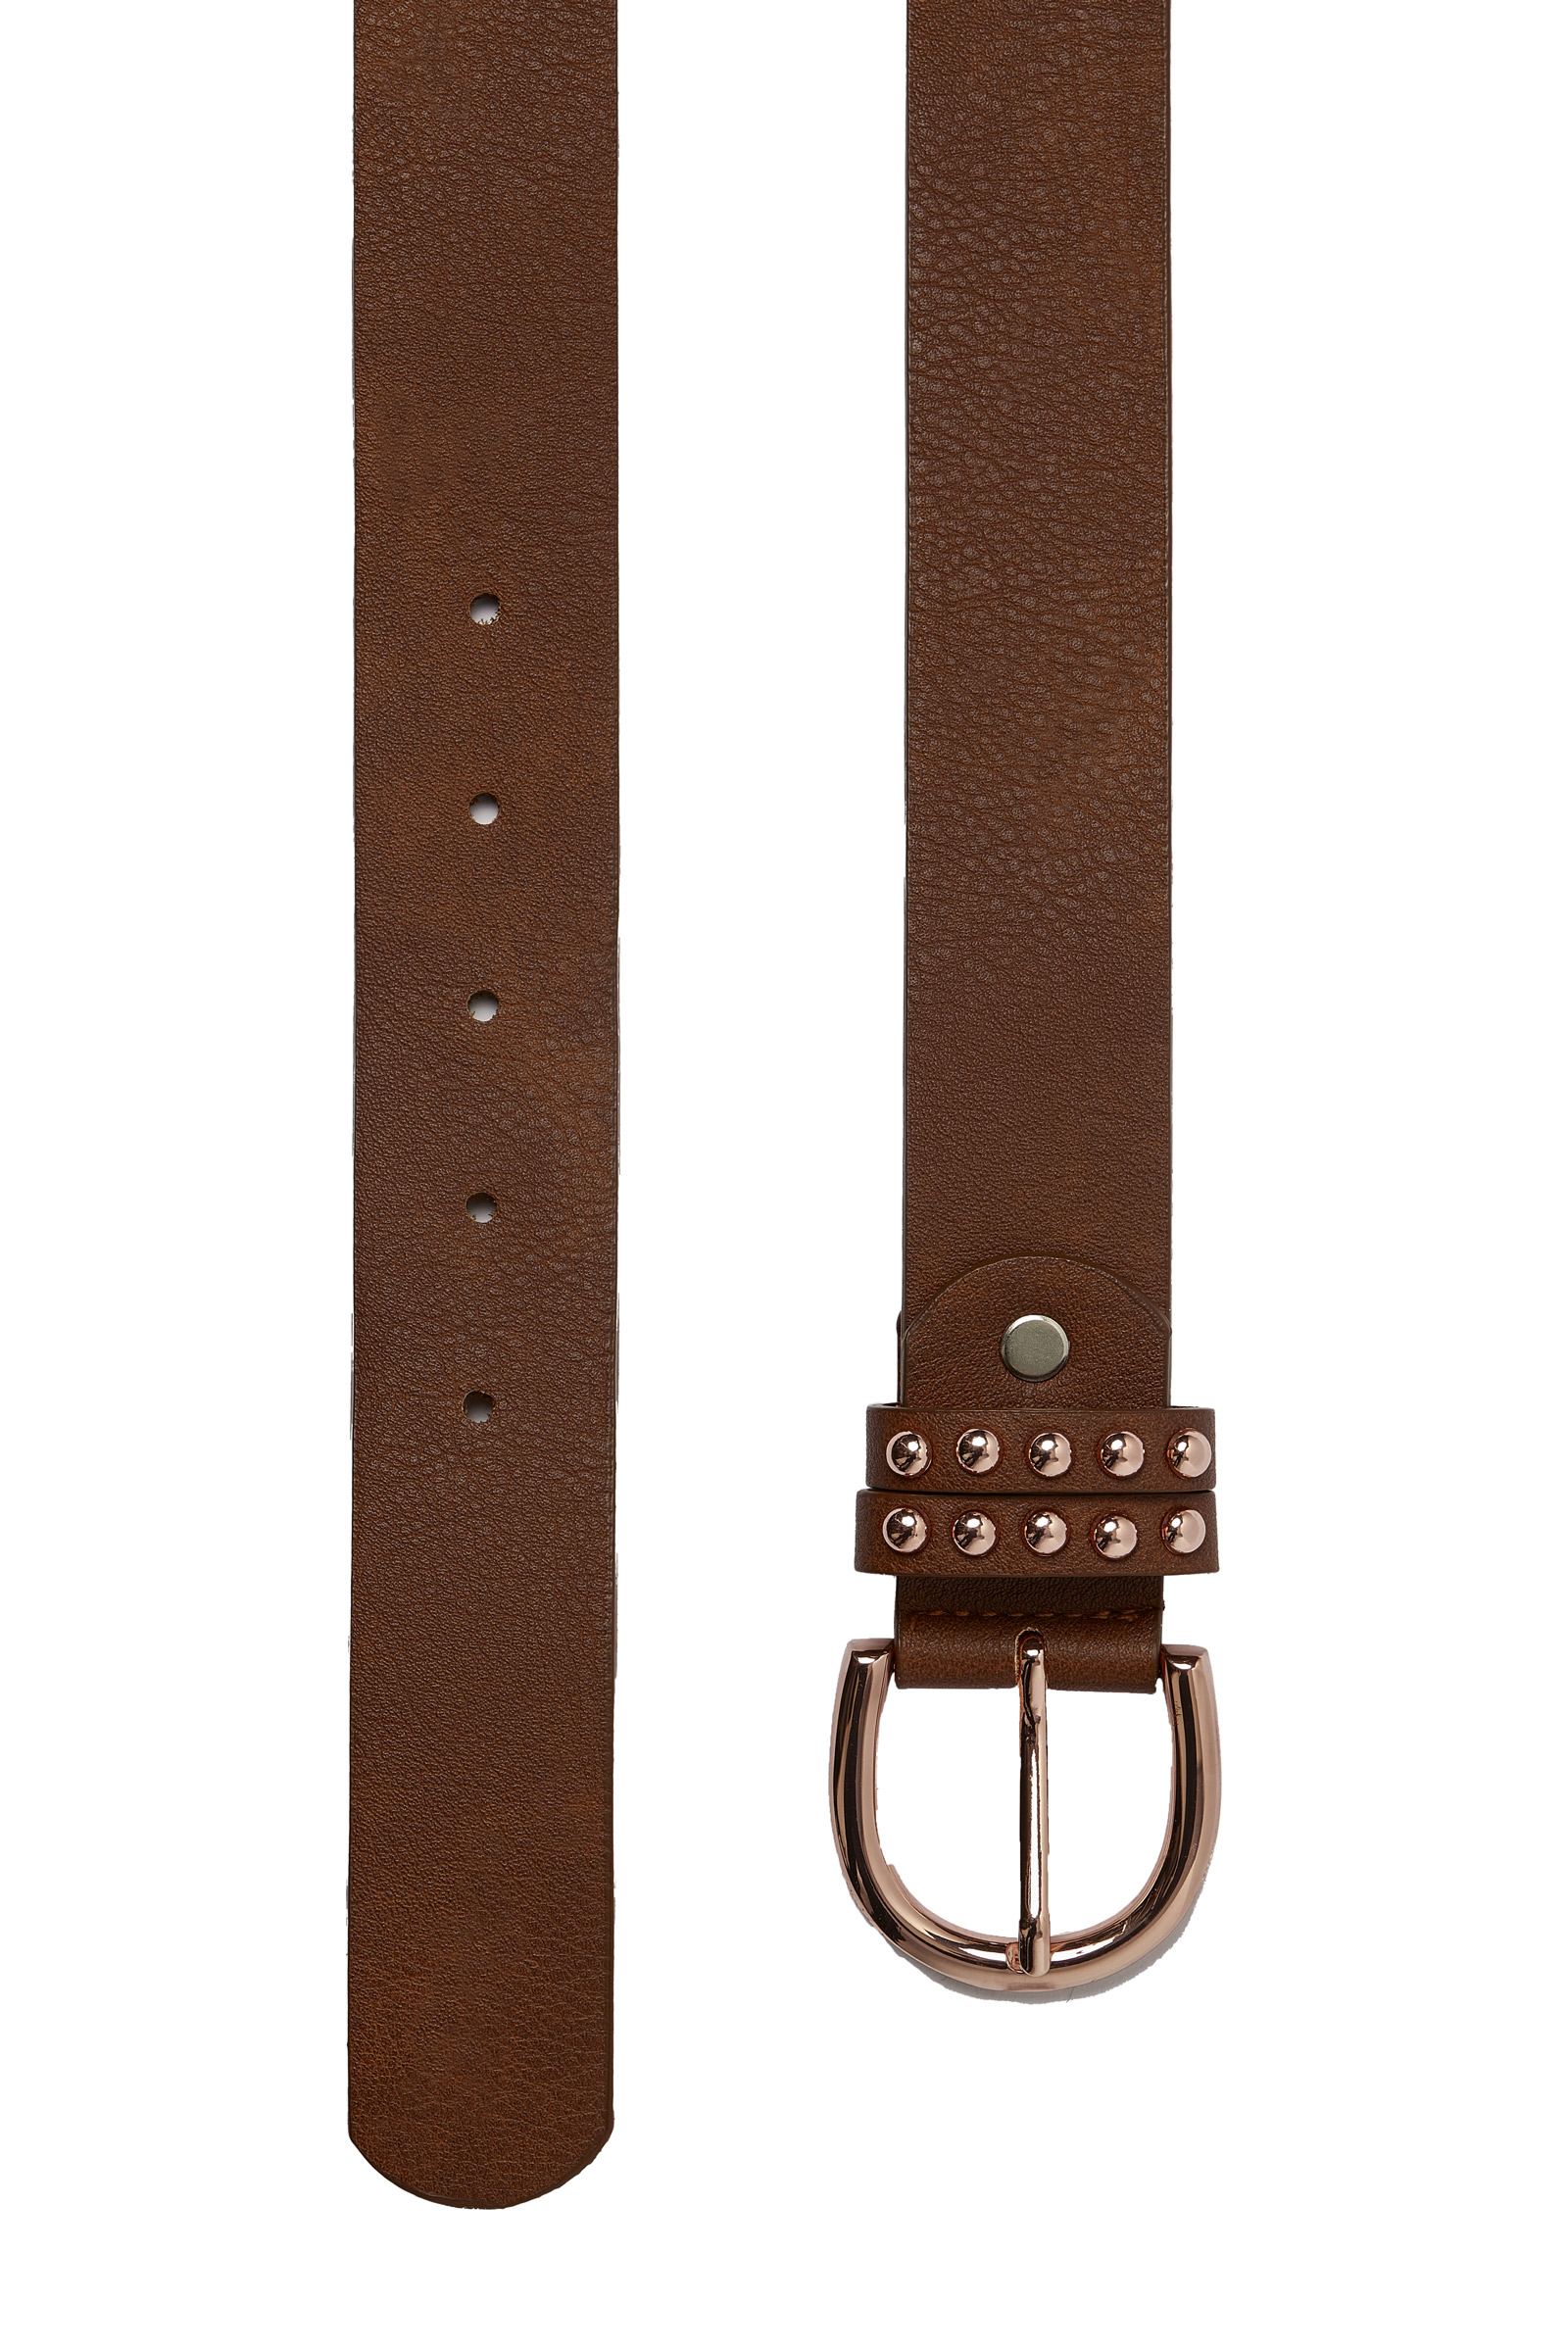 Beara Belts, Leather Belts Ireland